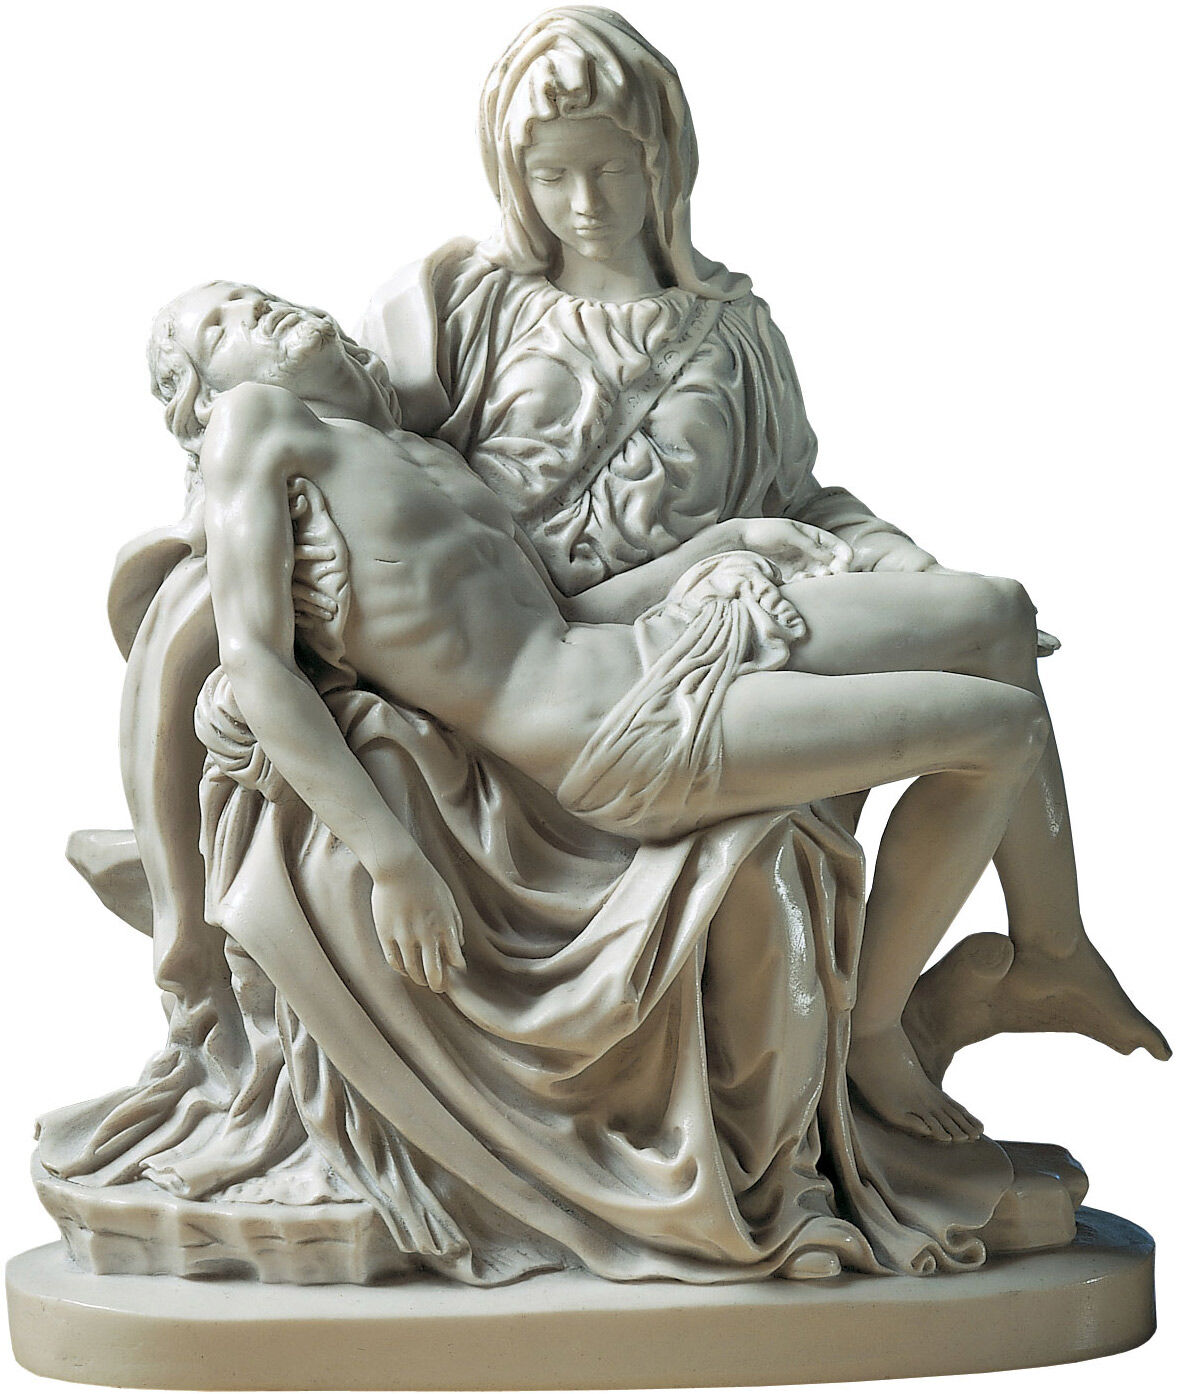 Sculpture "Pietà" (1489-99), artificial marble reduction by Michelangelo Buonarroti